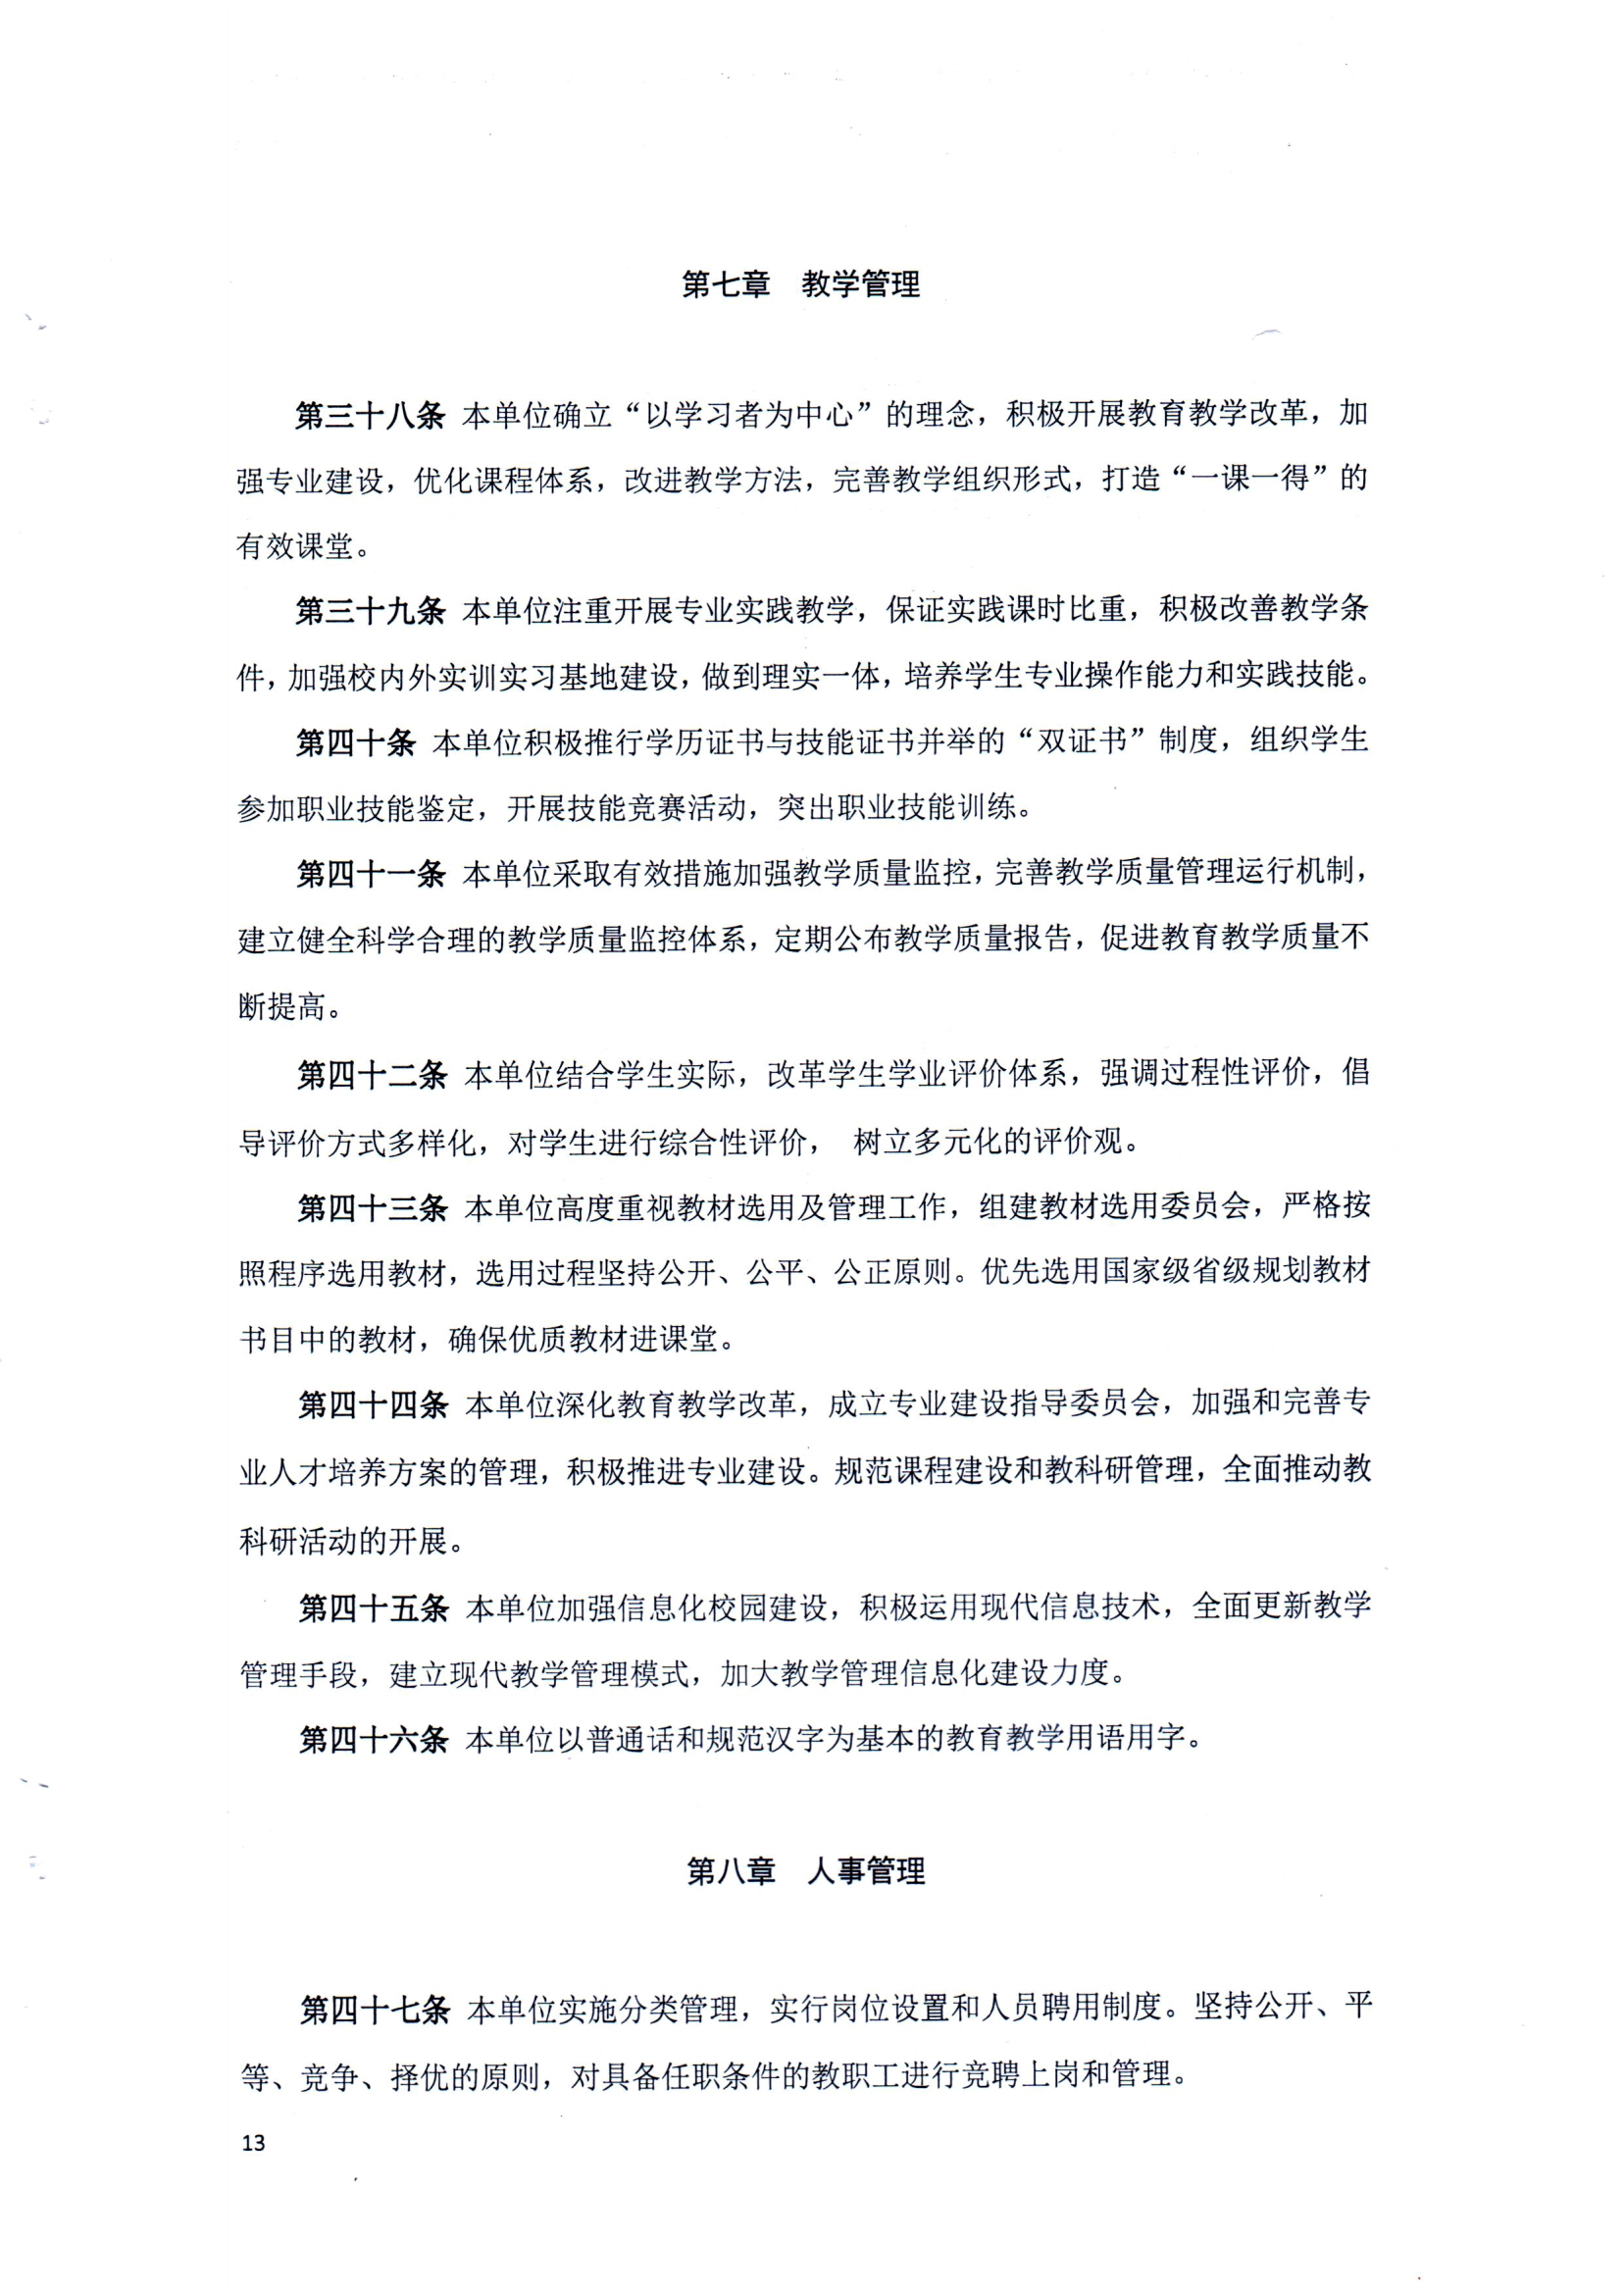 （中国）有限公司官网章程（修正案）_12.png